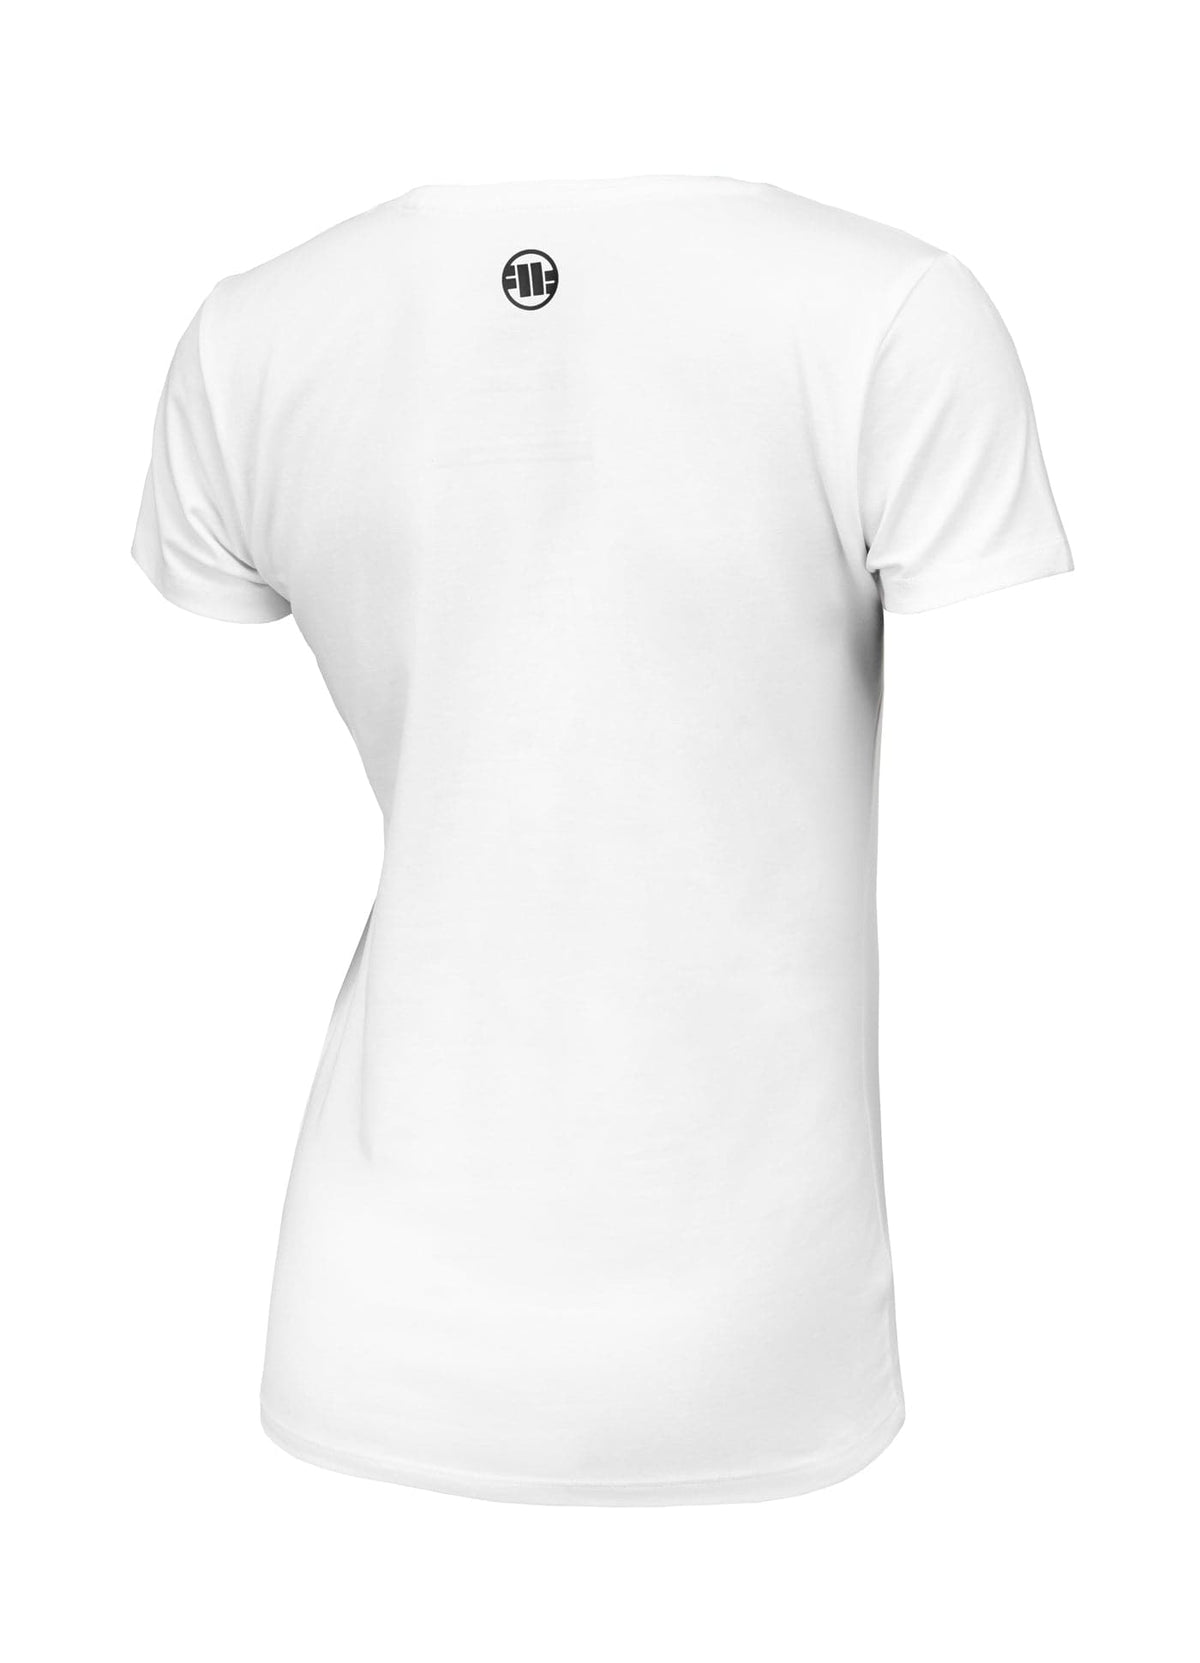 Koszulka Slim Fit PITBULL R 190 Biała - kup z Pitbull West Coast Oficjalny Sklep 